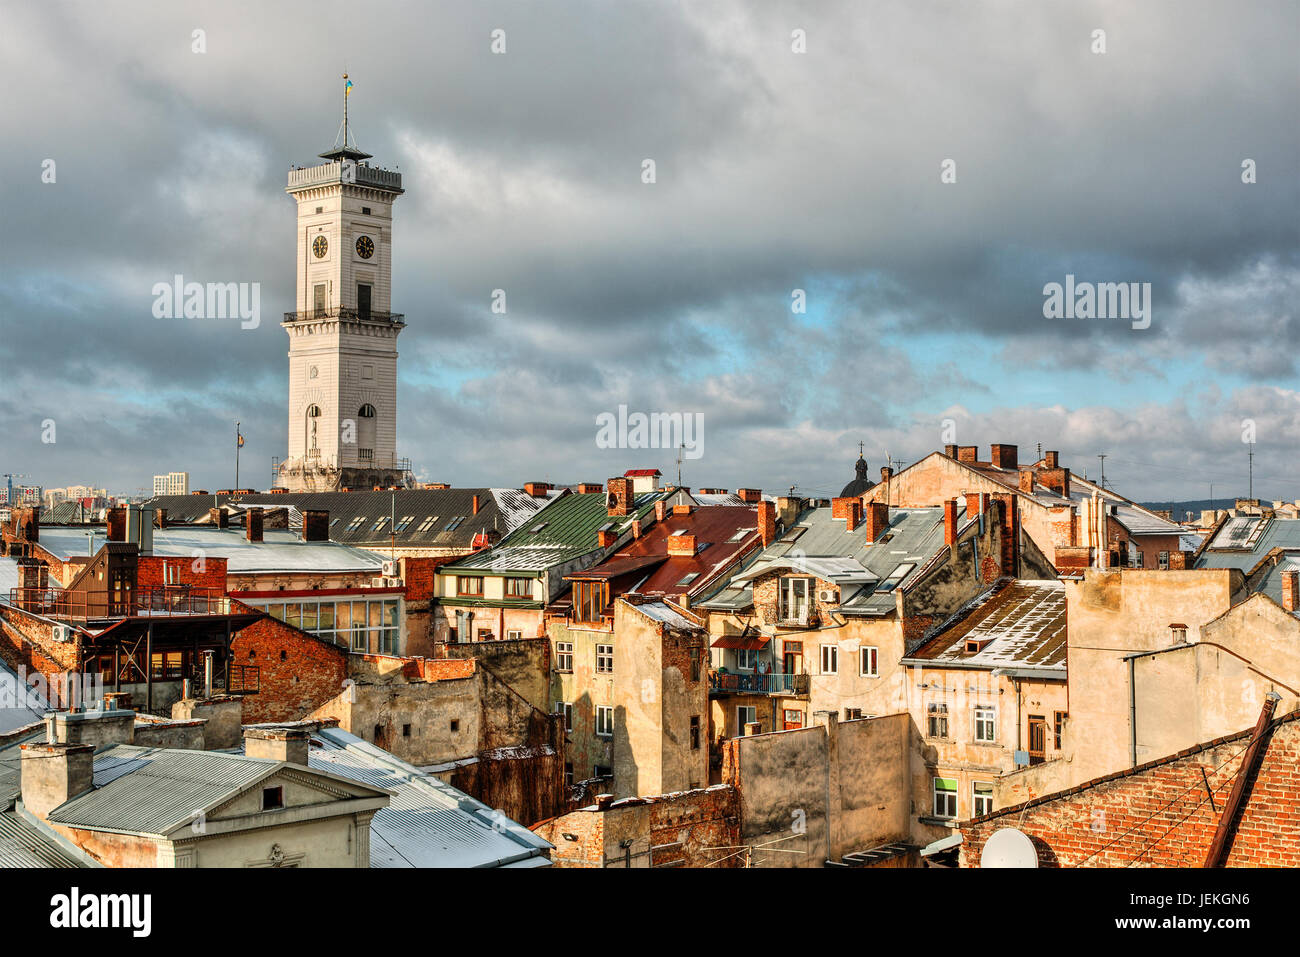 City skyline, Lviv, Ukraine Stock Photo